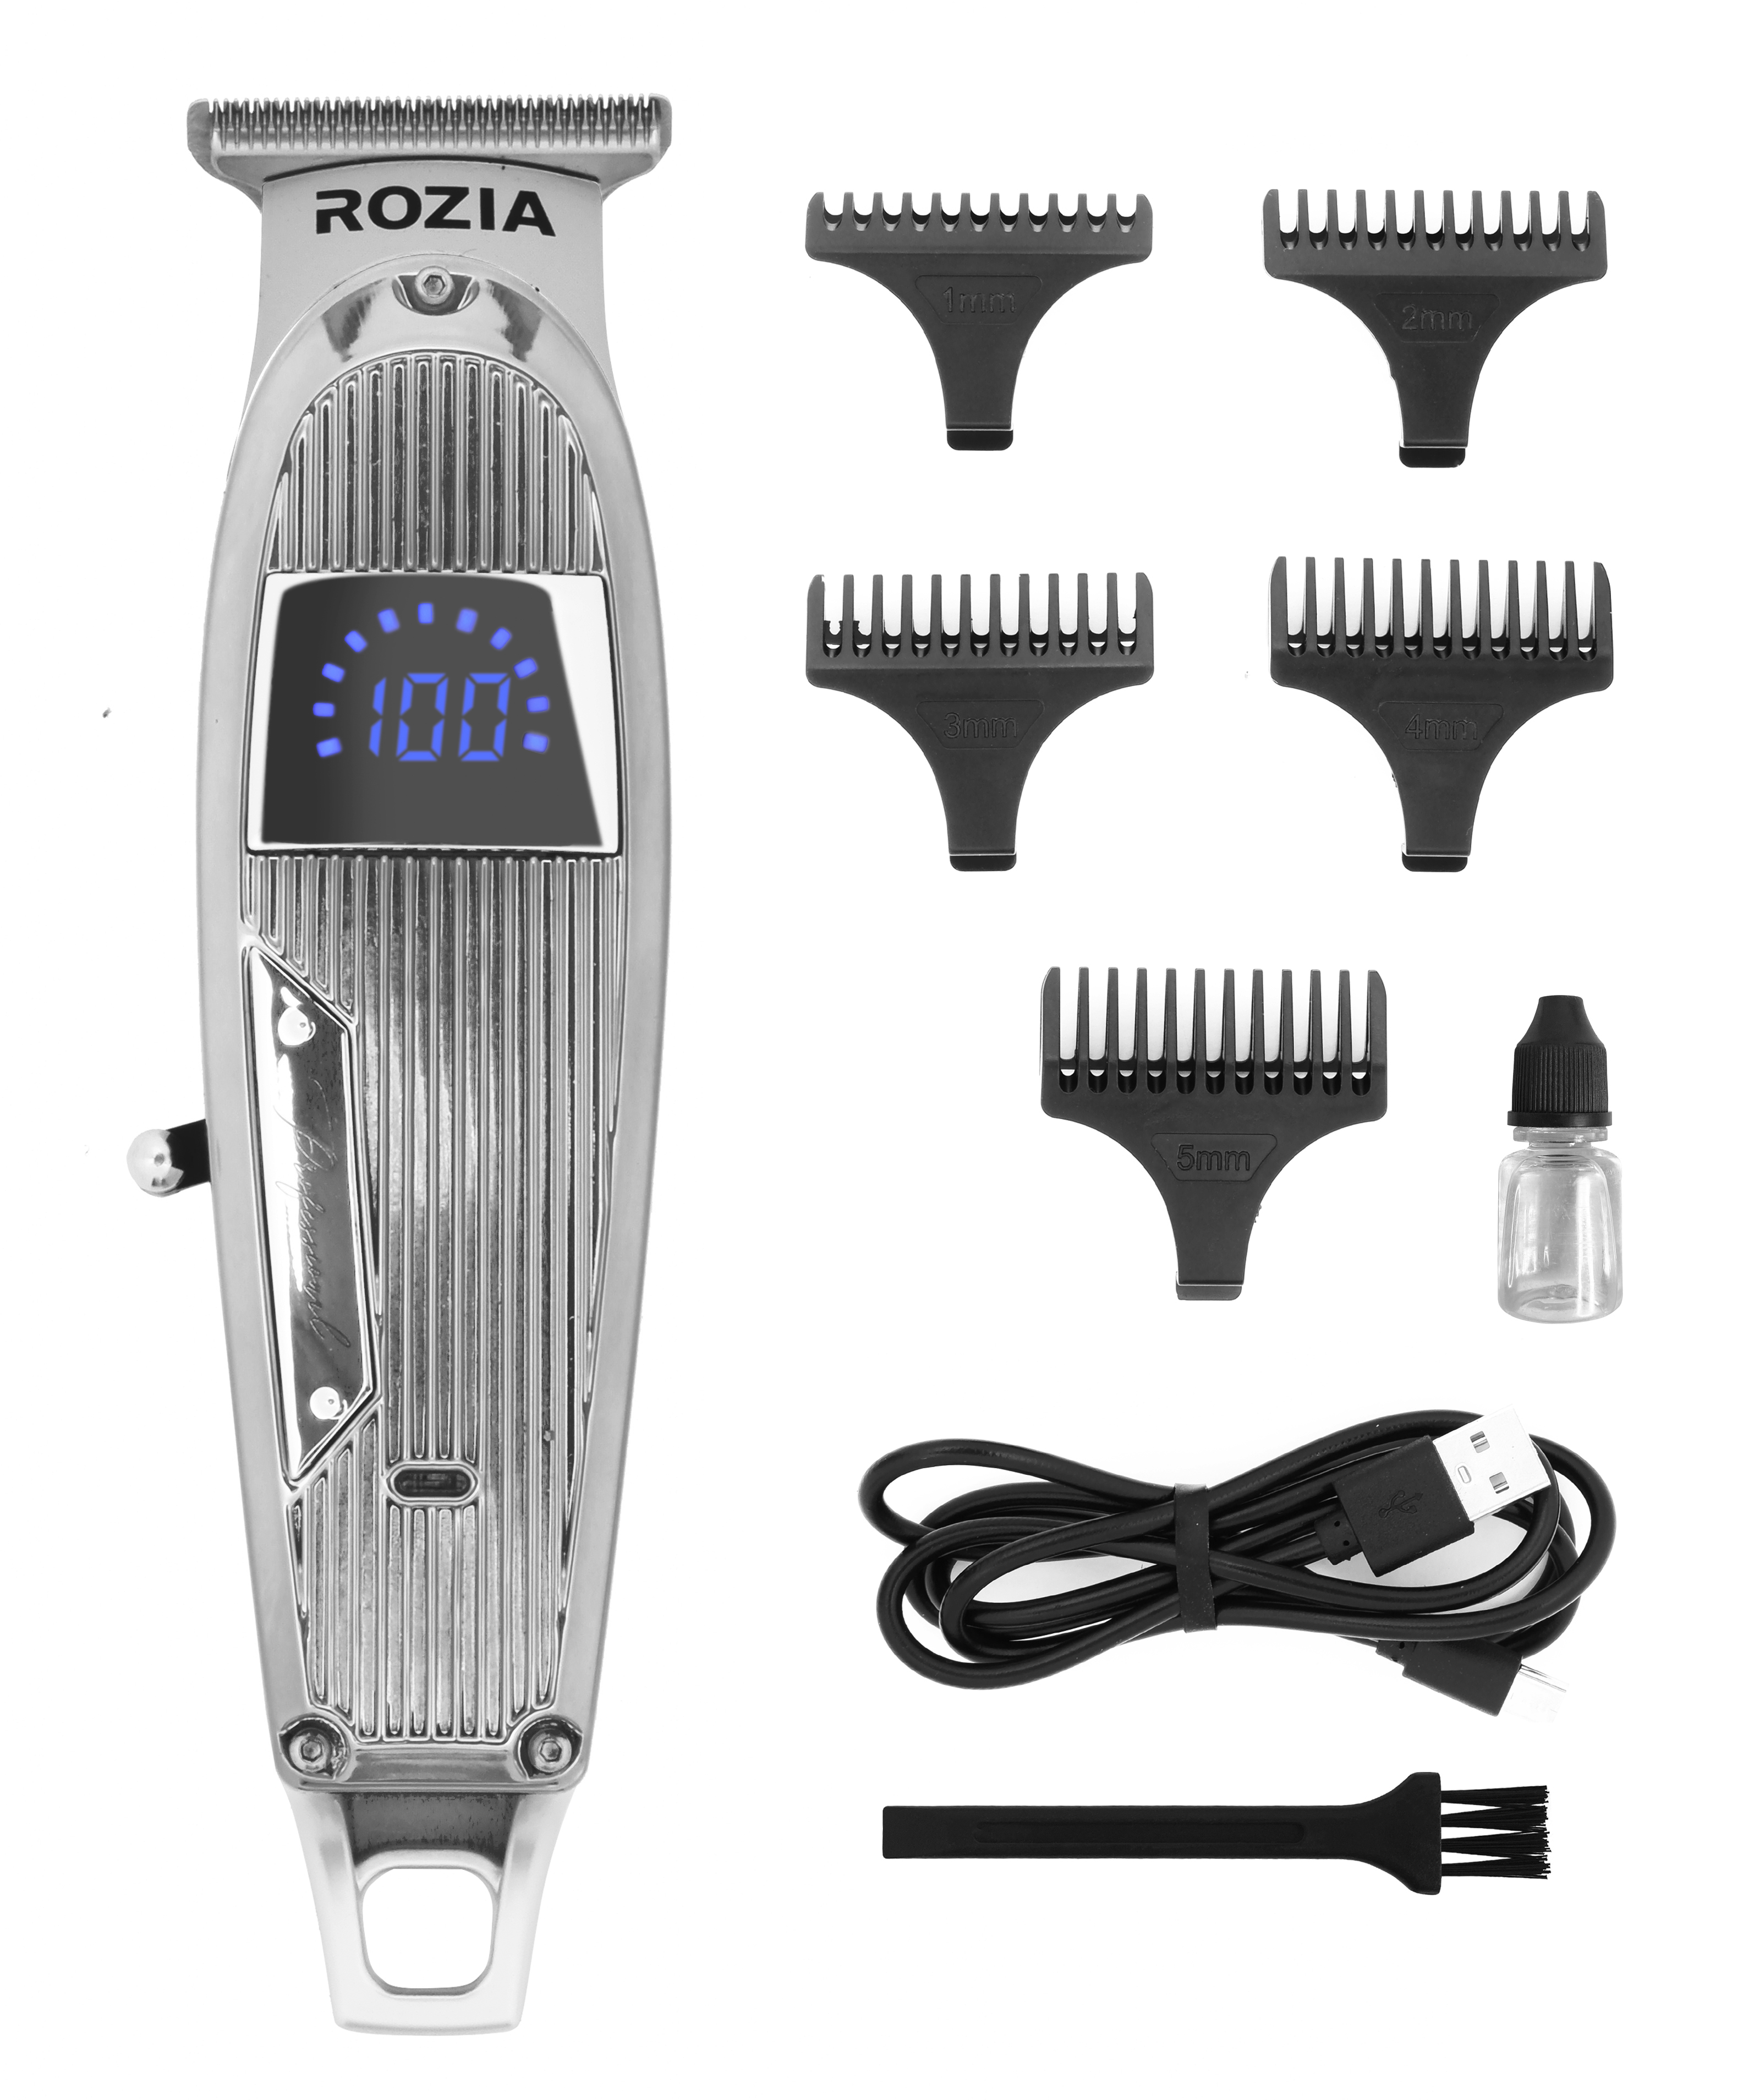 Машинка для стрижки волос Rozia HQ-321 серебристая машинка для стрижки волос rozia hq 365 белая черная